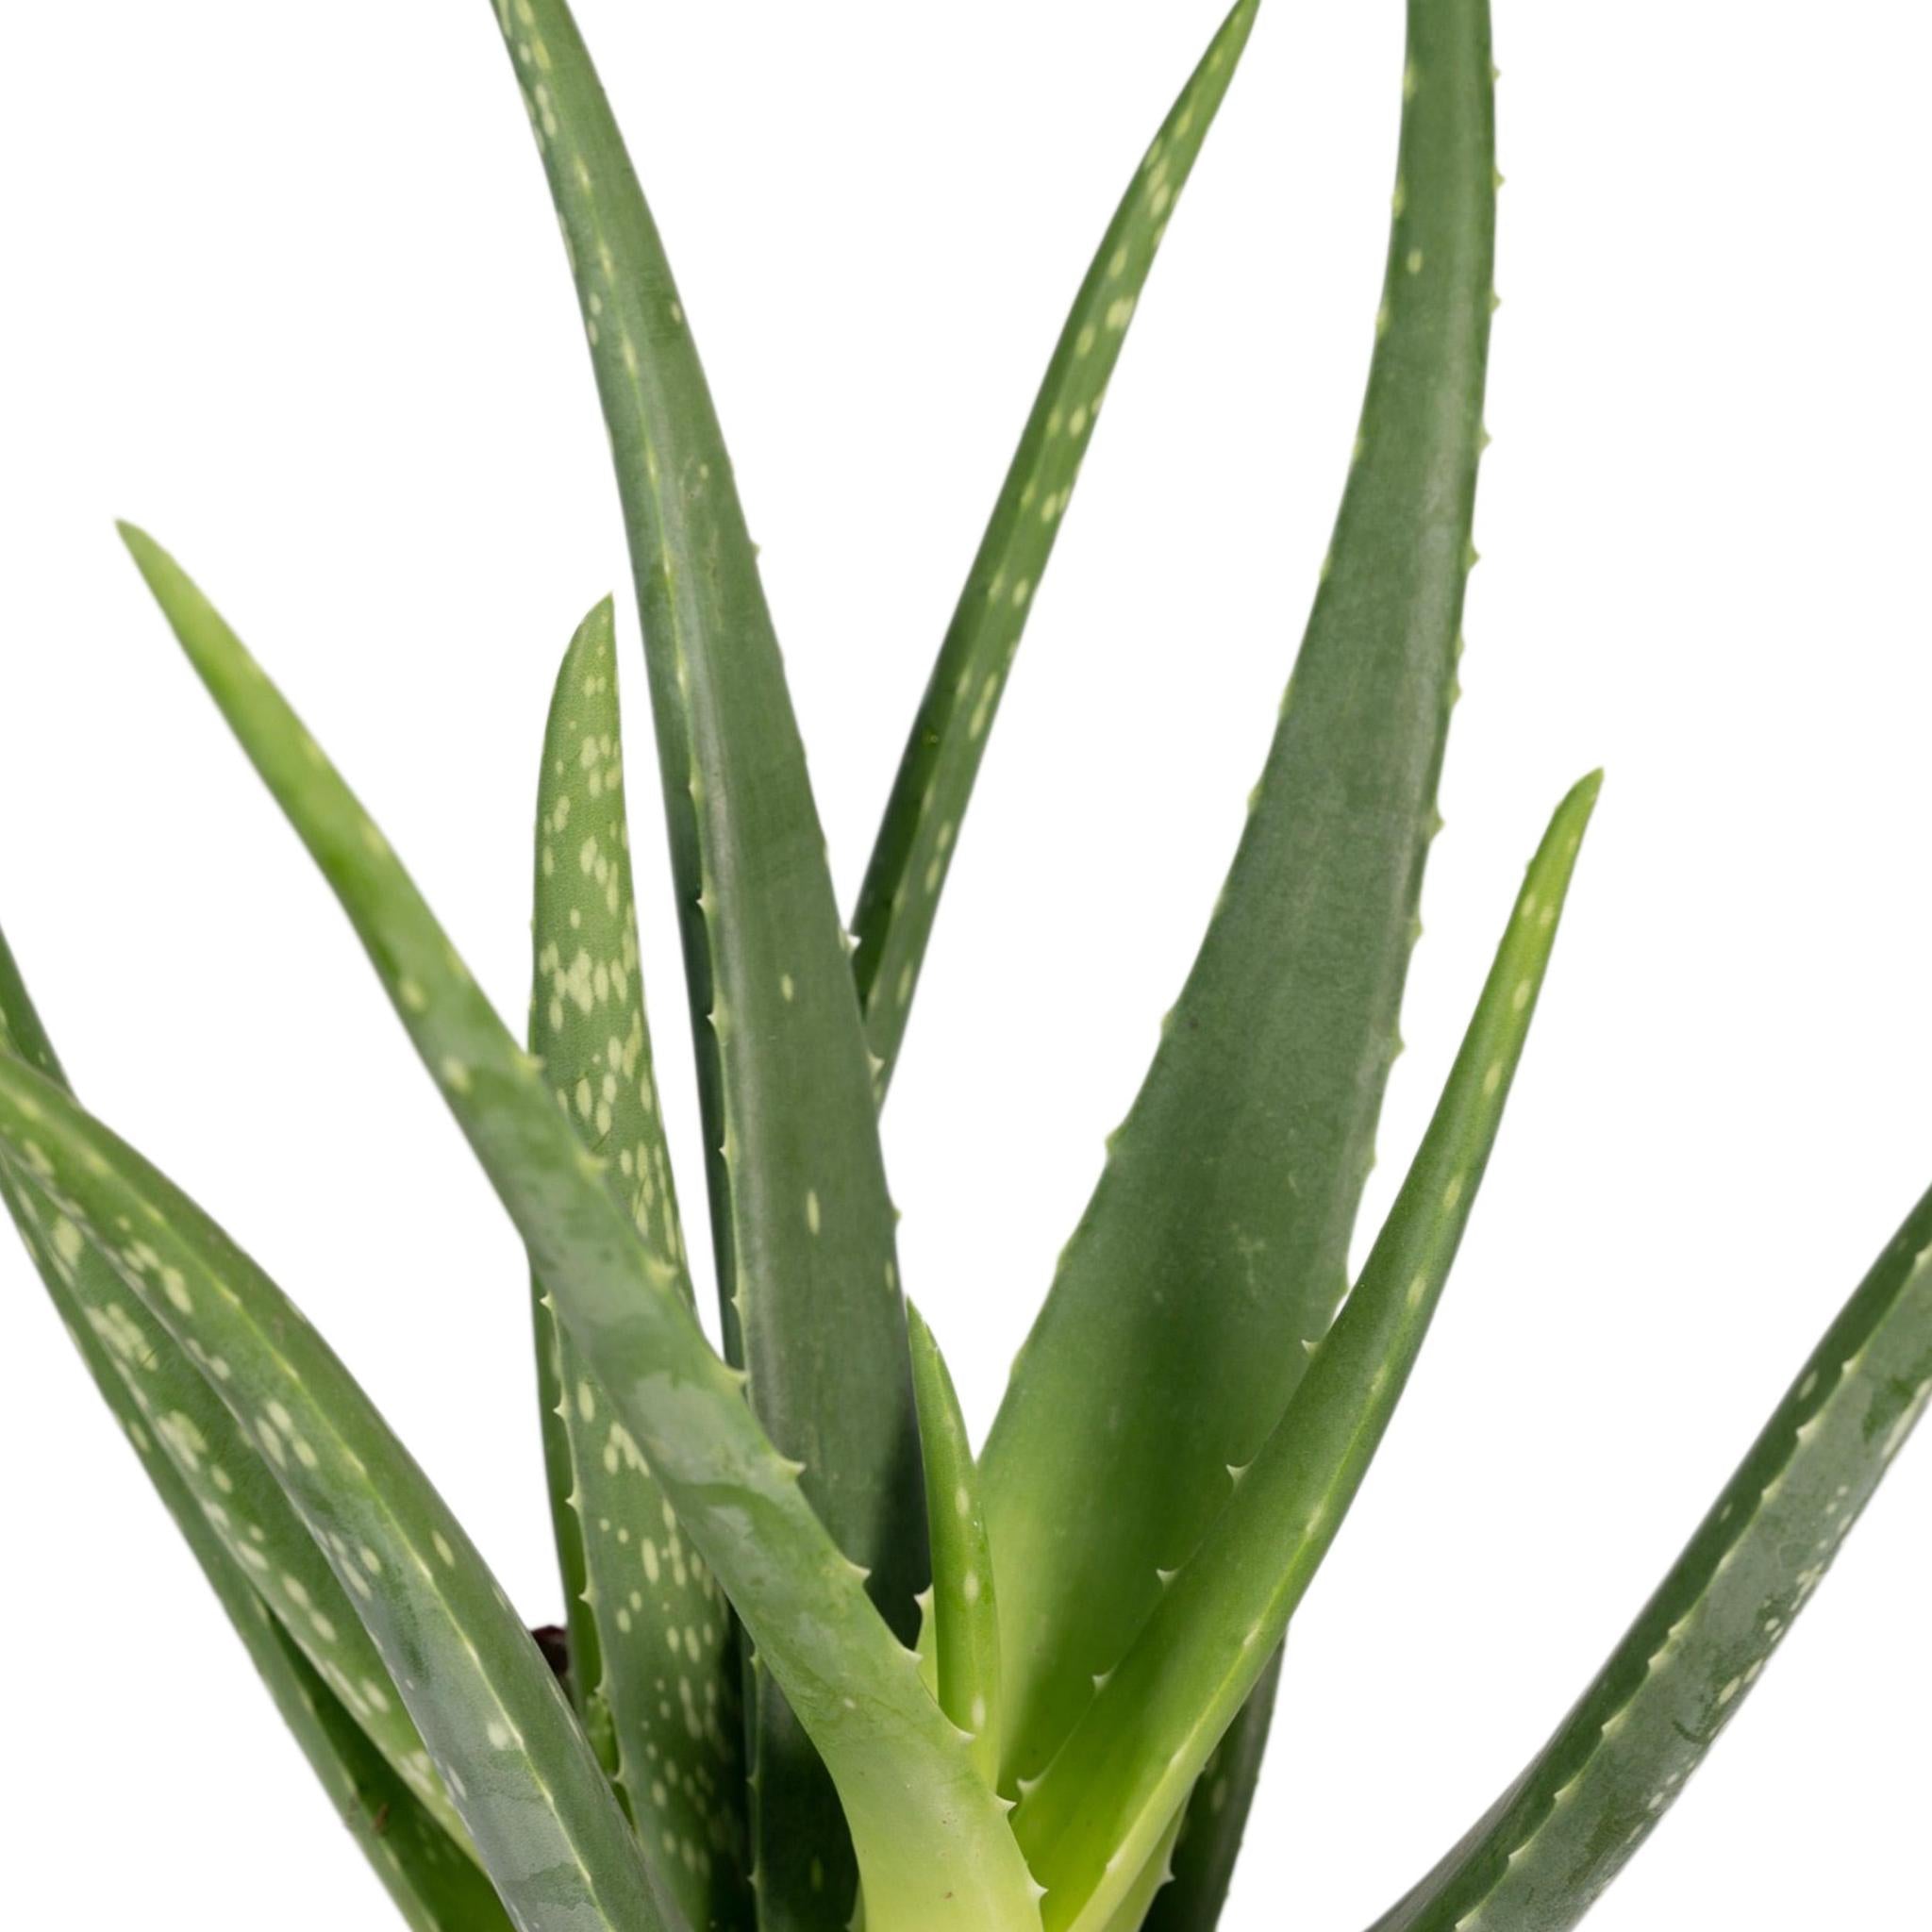 Echte Aloe (Aloe vera) - Urbangreen Store